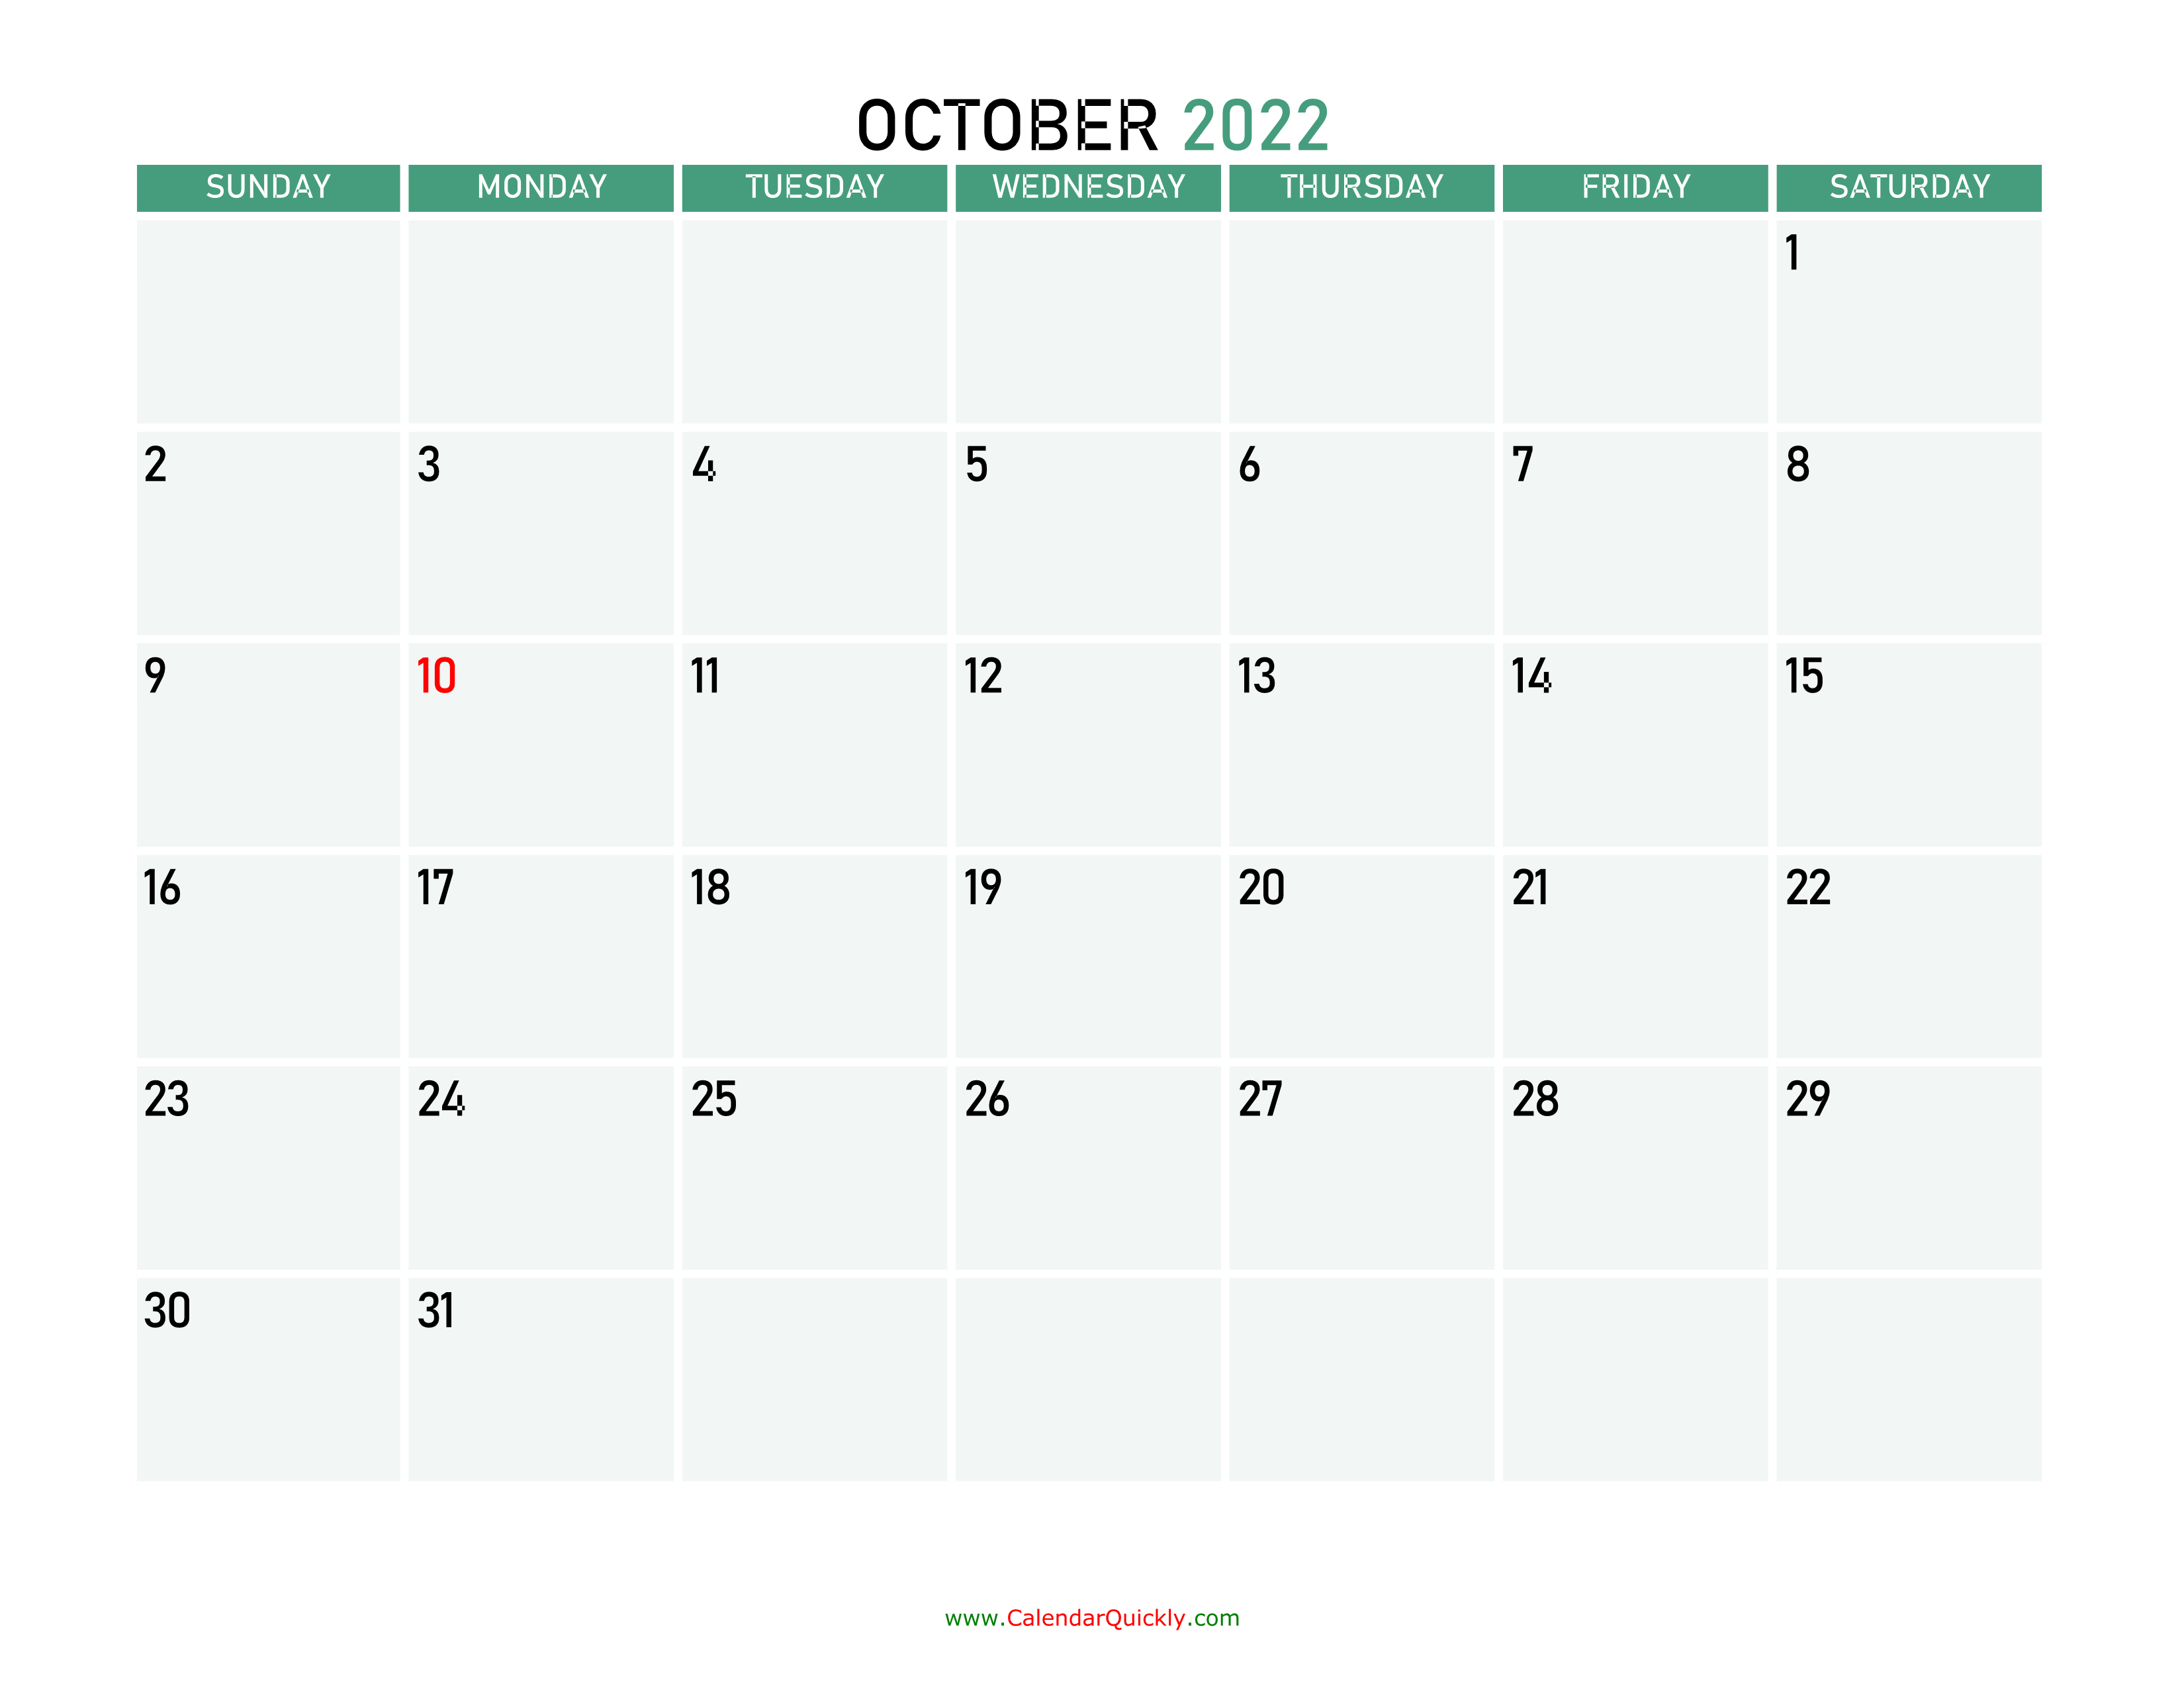 october 2022 calendars calendar quickly